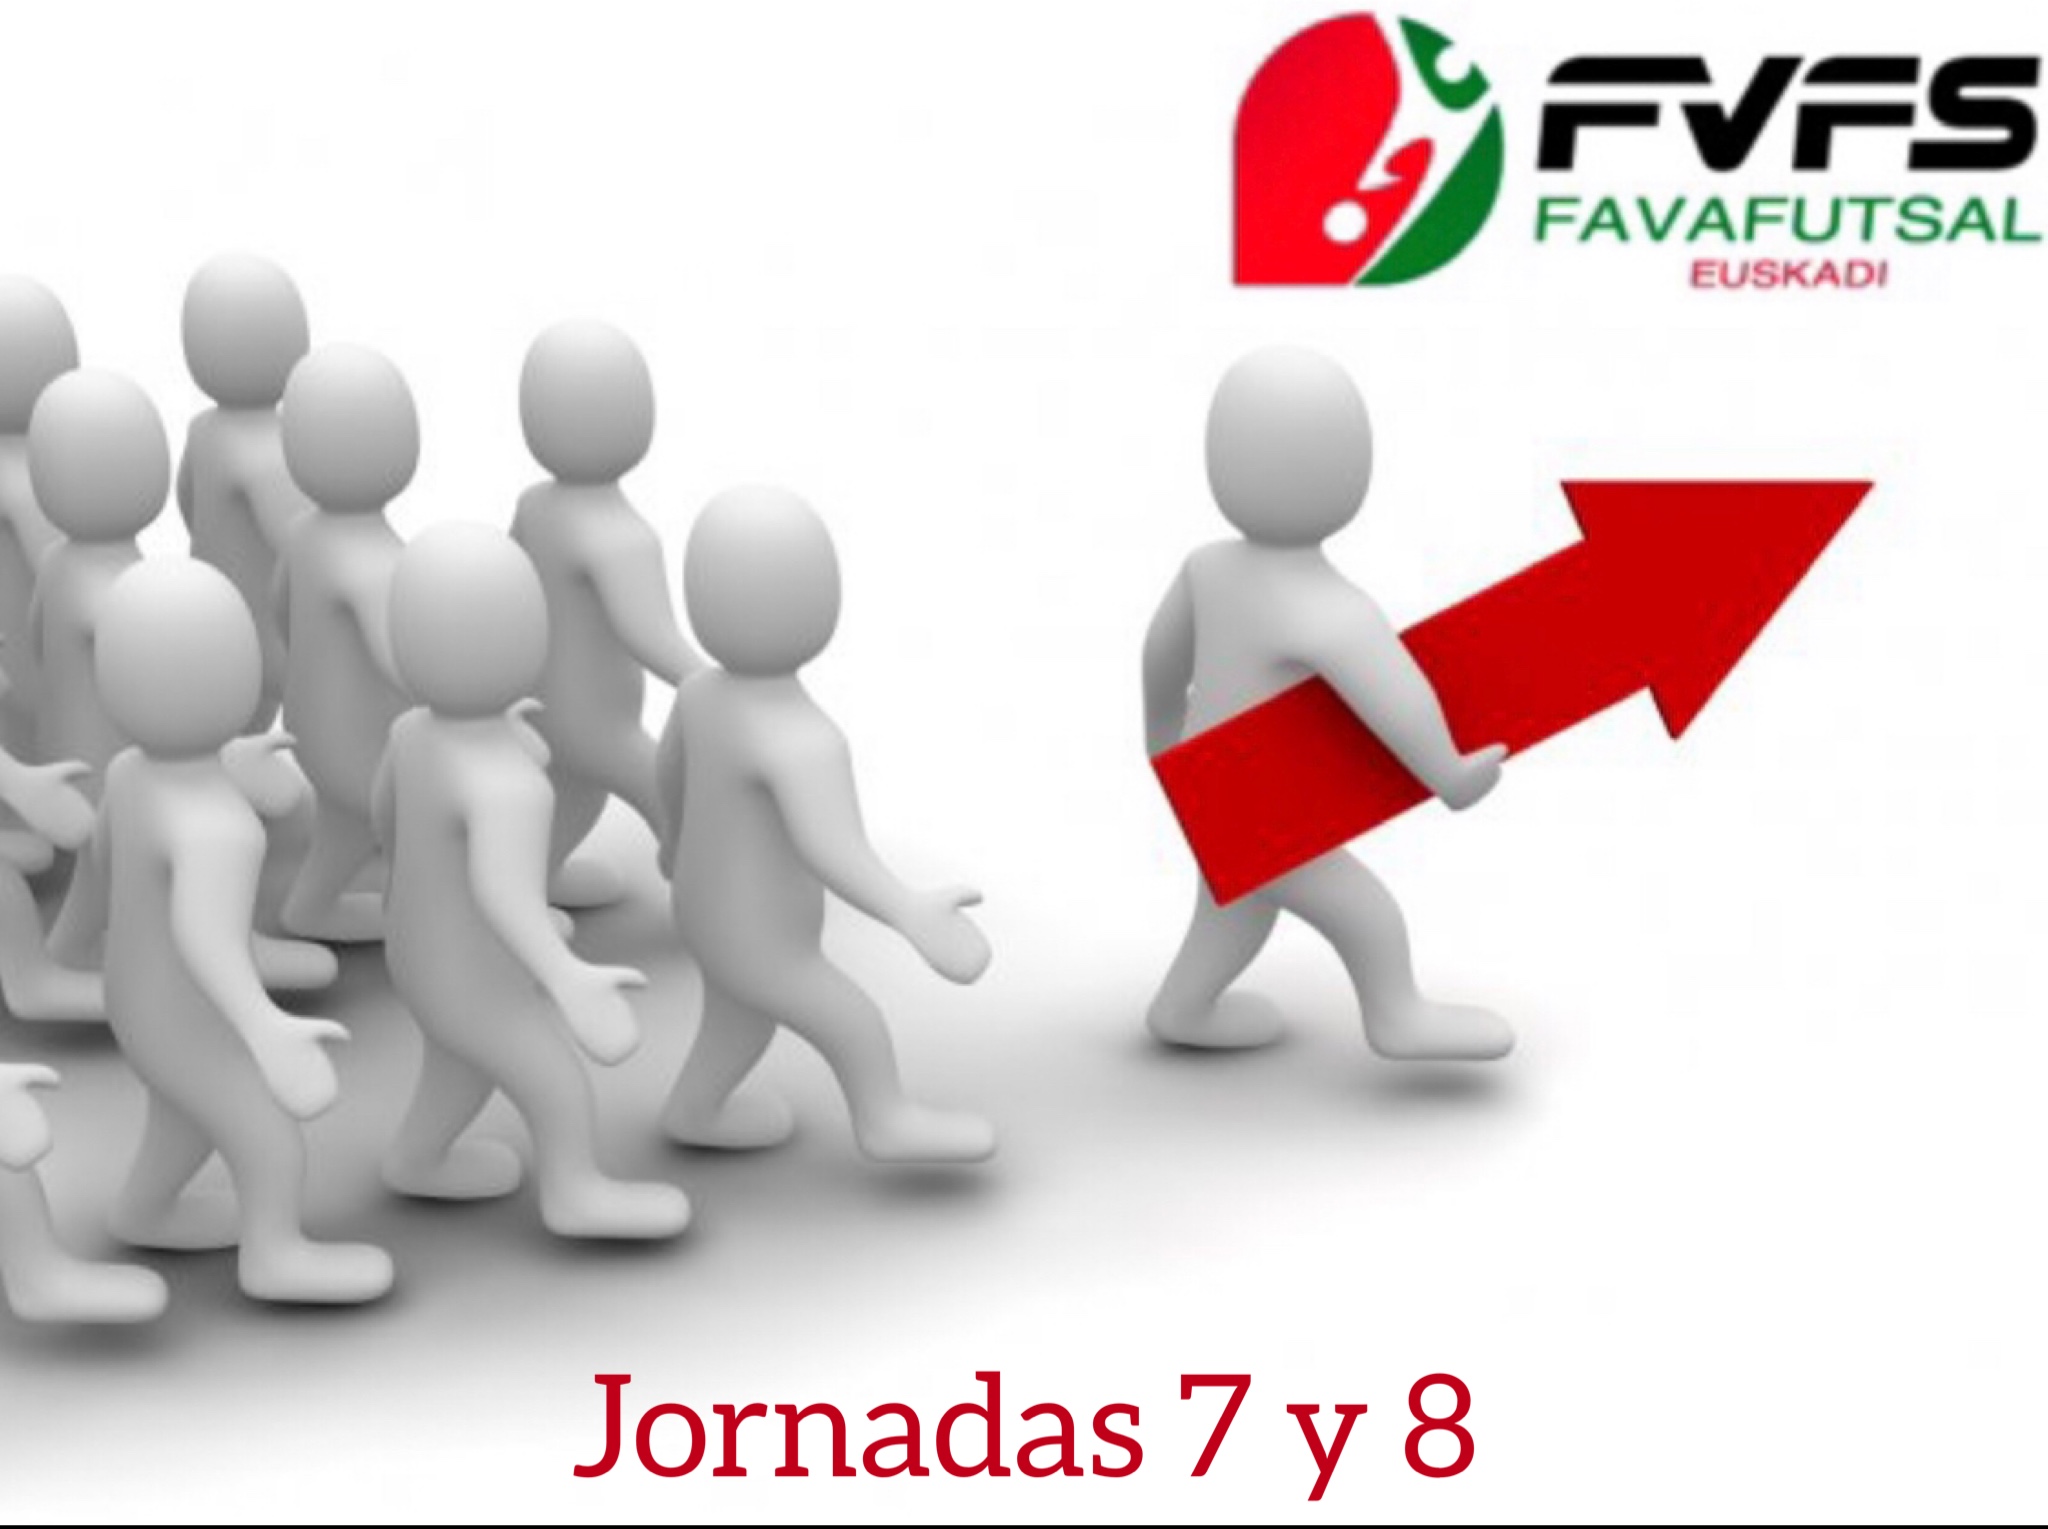 La Puebla Futsal, Kh7 F.S, La Tricolor, Atlético A.F.C y Bar Edu Rallye Center F.S, actuales líderes tras la disputa de la séptima y octava jornada en las diferentes categorías de las competiciones vascas de futsal de la temporada 2022/2023.